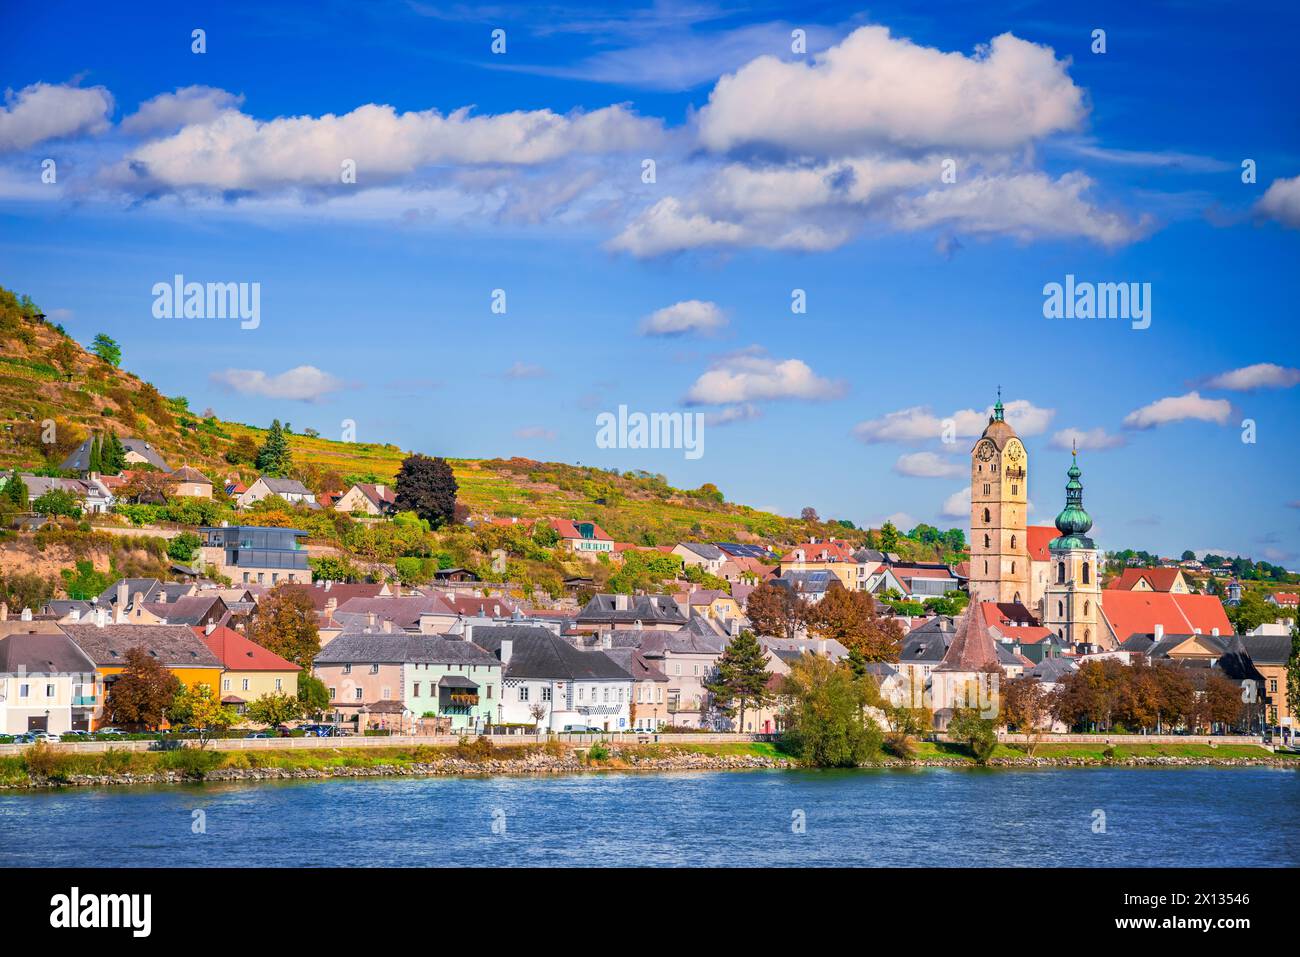 Krems an der Donau, Niederösterreich. Wunderschöne Stadt im Wachautal, Reiseziel Donau, herbstliche Blätter Stockfoto